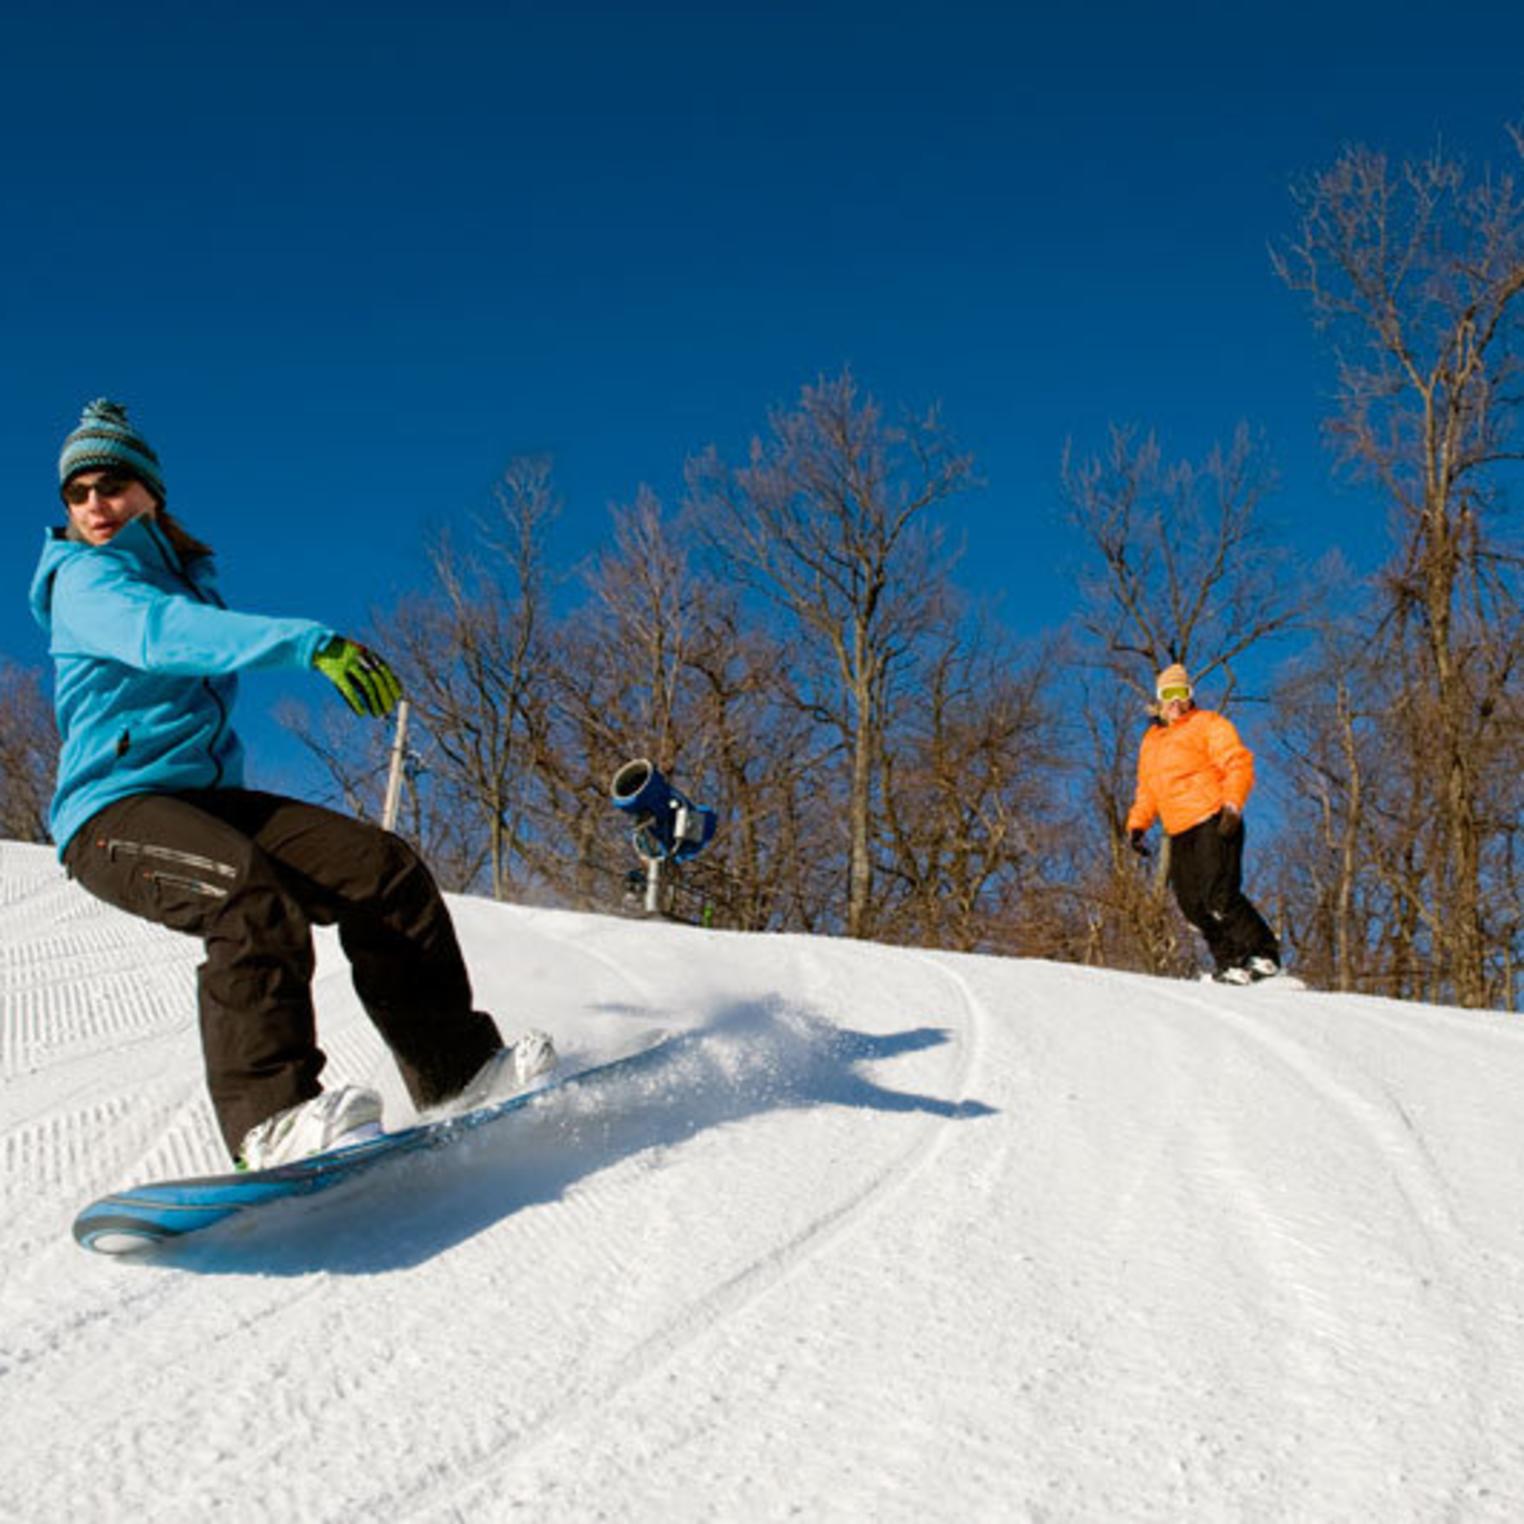 Snowboarding at Roundtop Mountain Resort